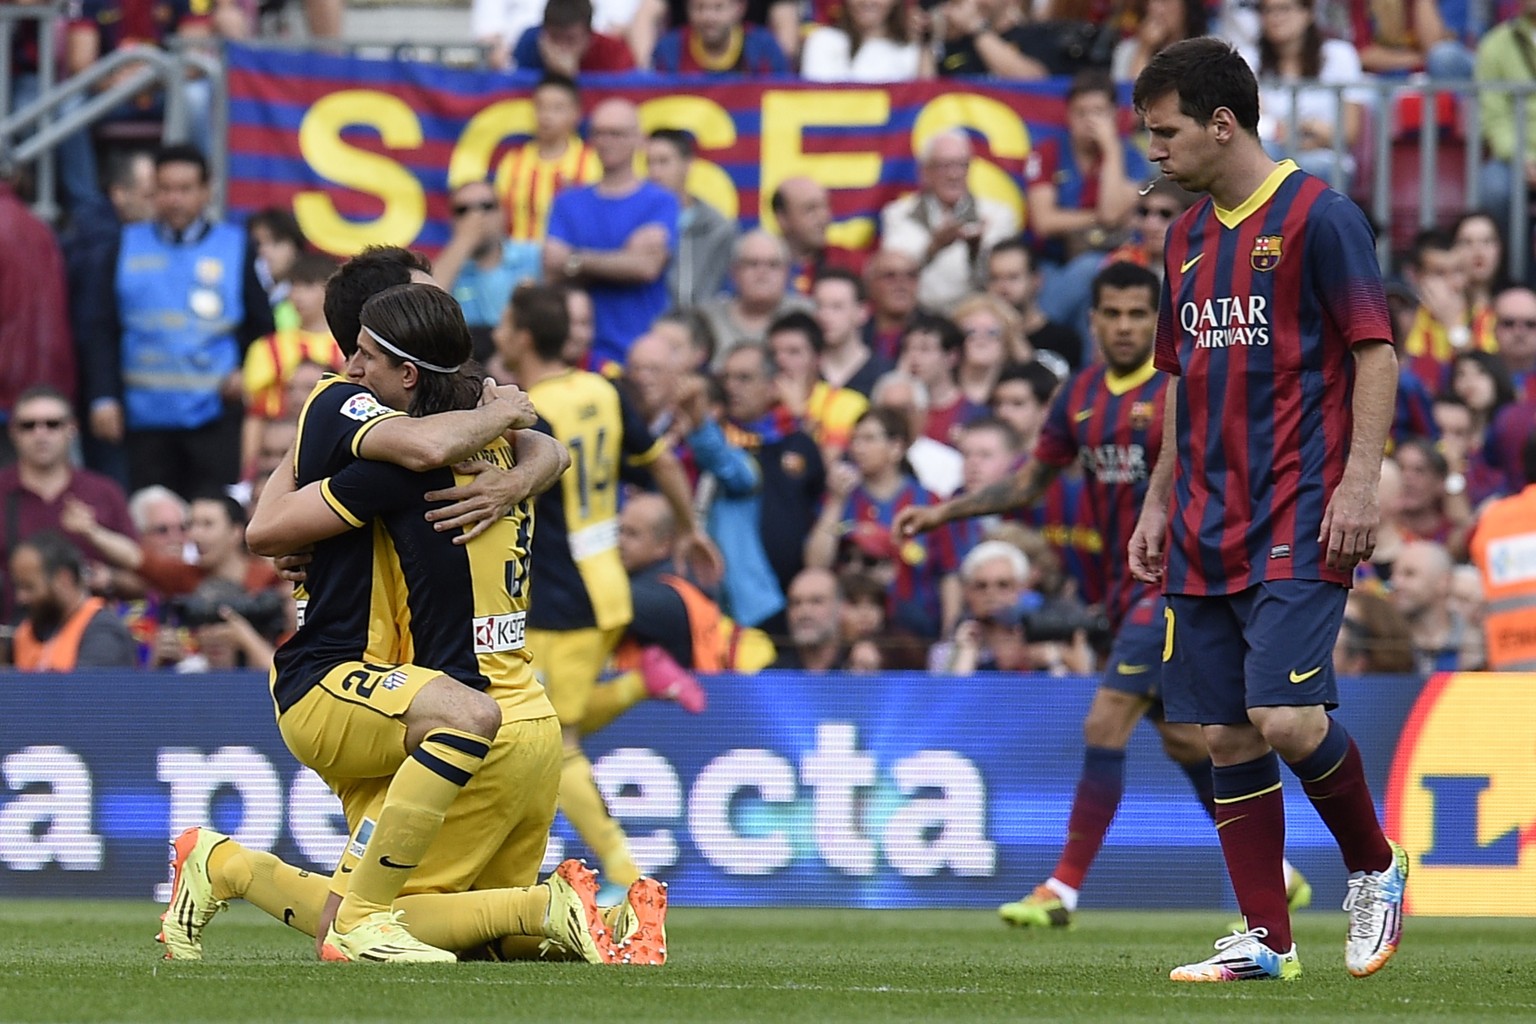 Lionel Messi spuckt auf den Titel von Atlético. Nein, natürlich nicht. Ist nur der Winkel. So etwas würde Messi nie machen.